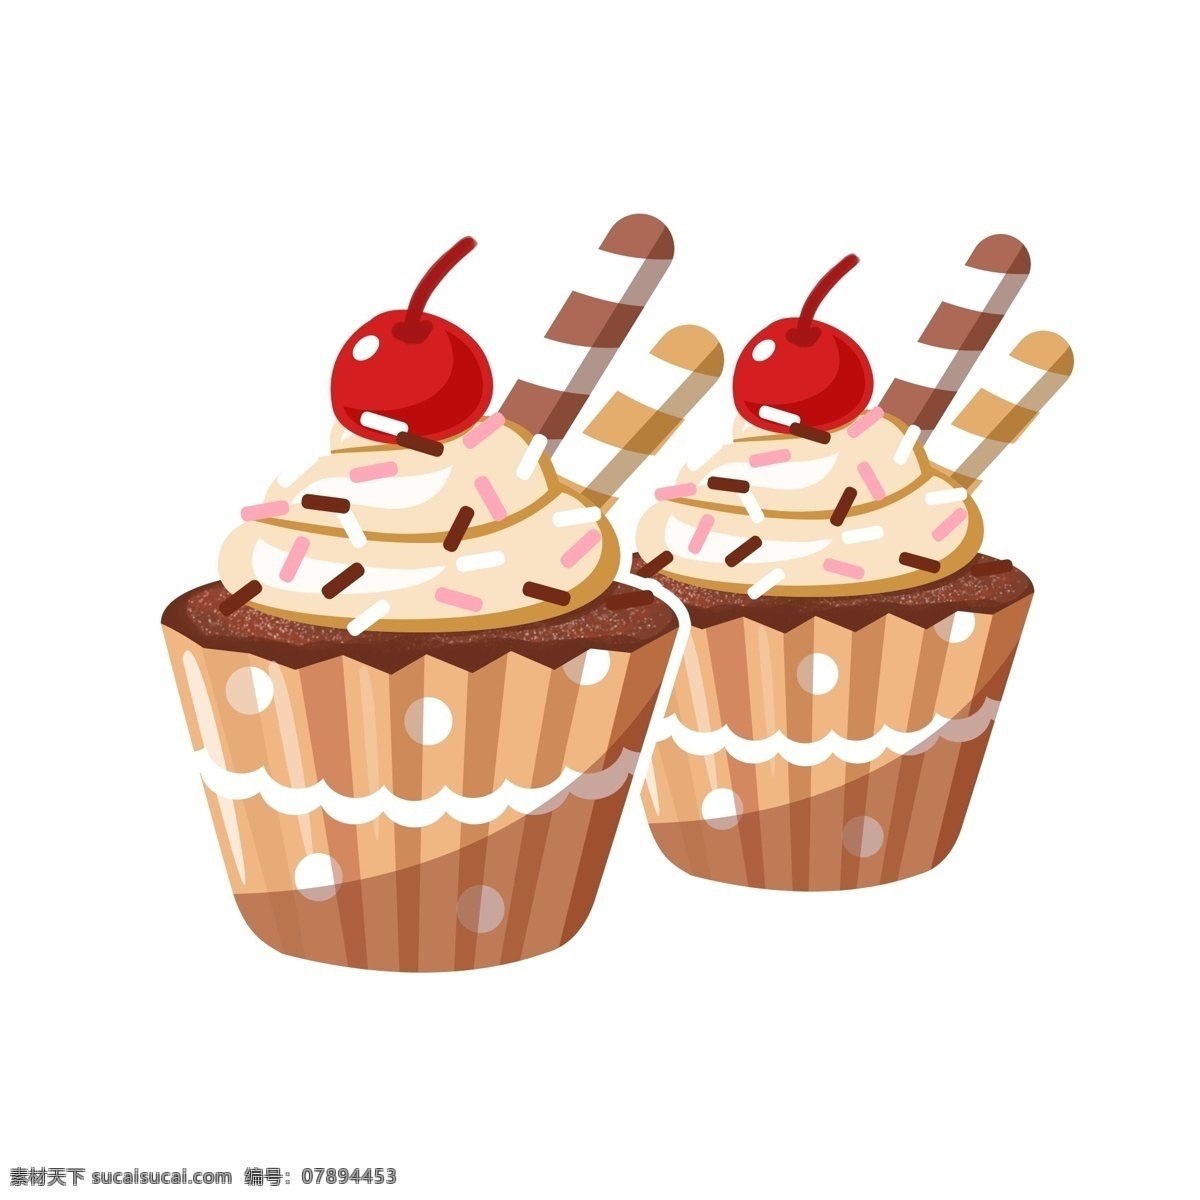 美食 樱桃 巧克力 杯 蛋糕 甜品 朱古力 卡通 矢量 商用 cupcake chocolate 巧克力棒